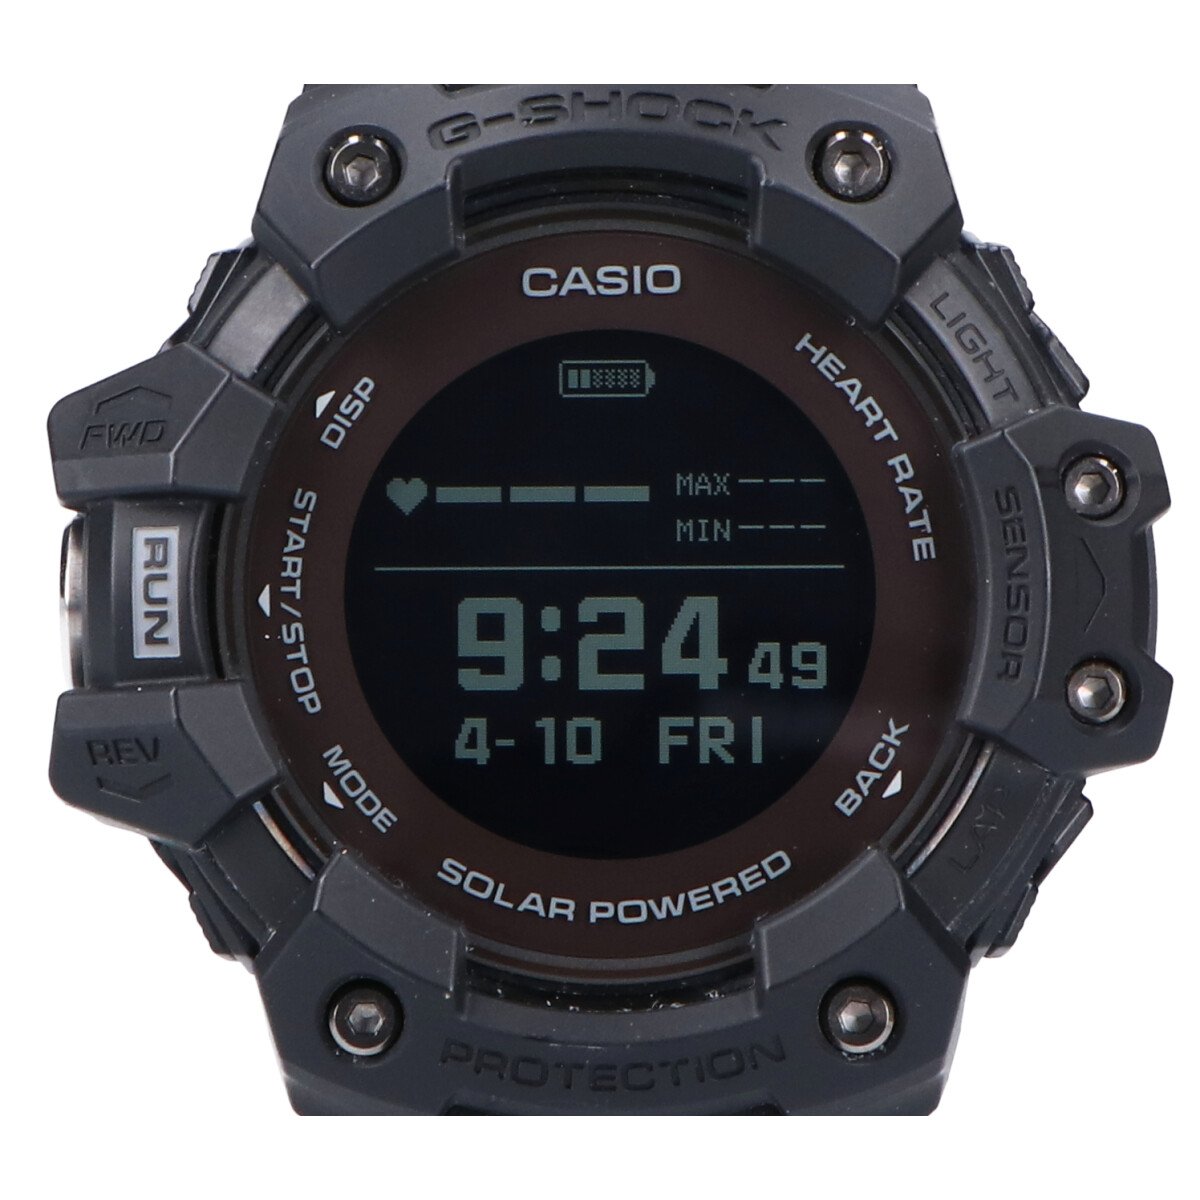 ジーショックのGBD-H1000-1JR G-SQUAD 心拍計/GPS機能搭載 スマートウォッチの買取実績です。